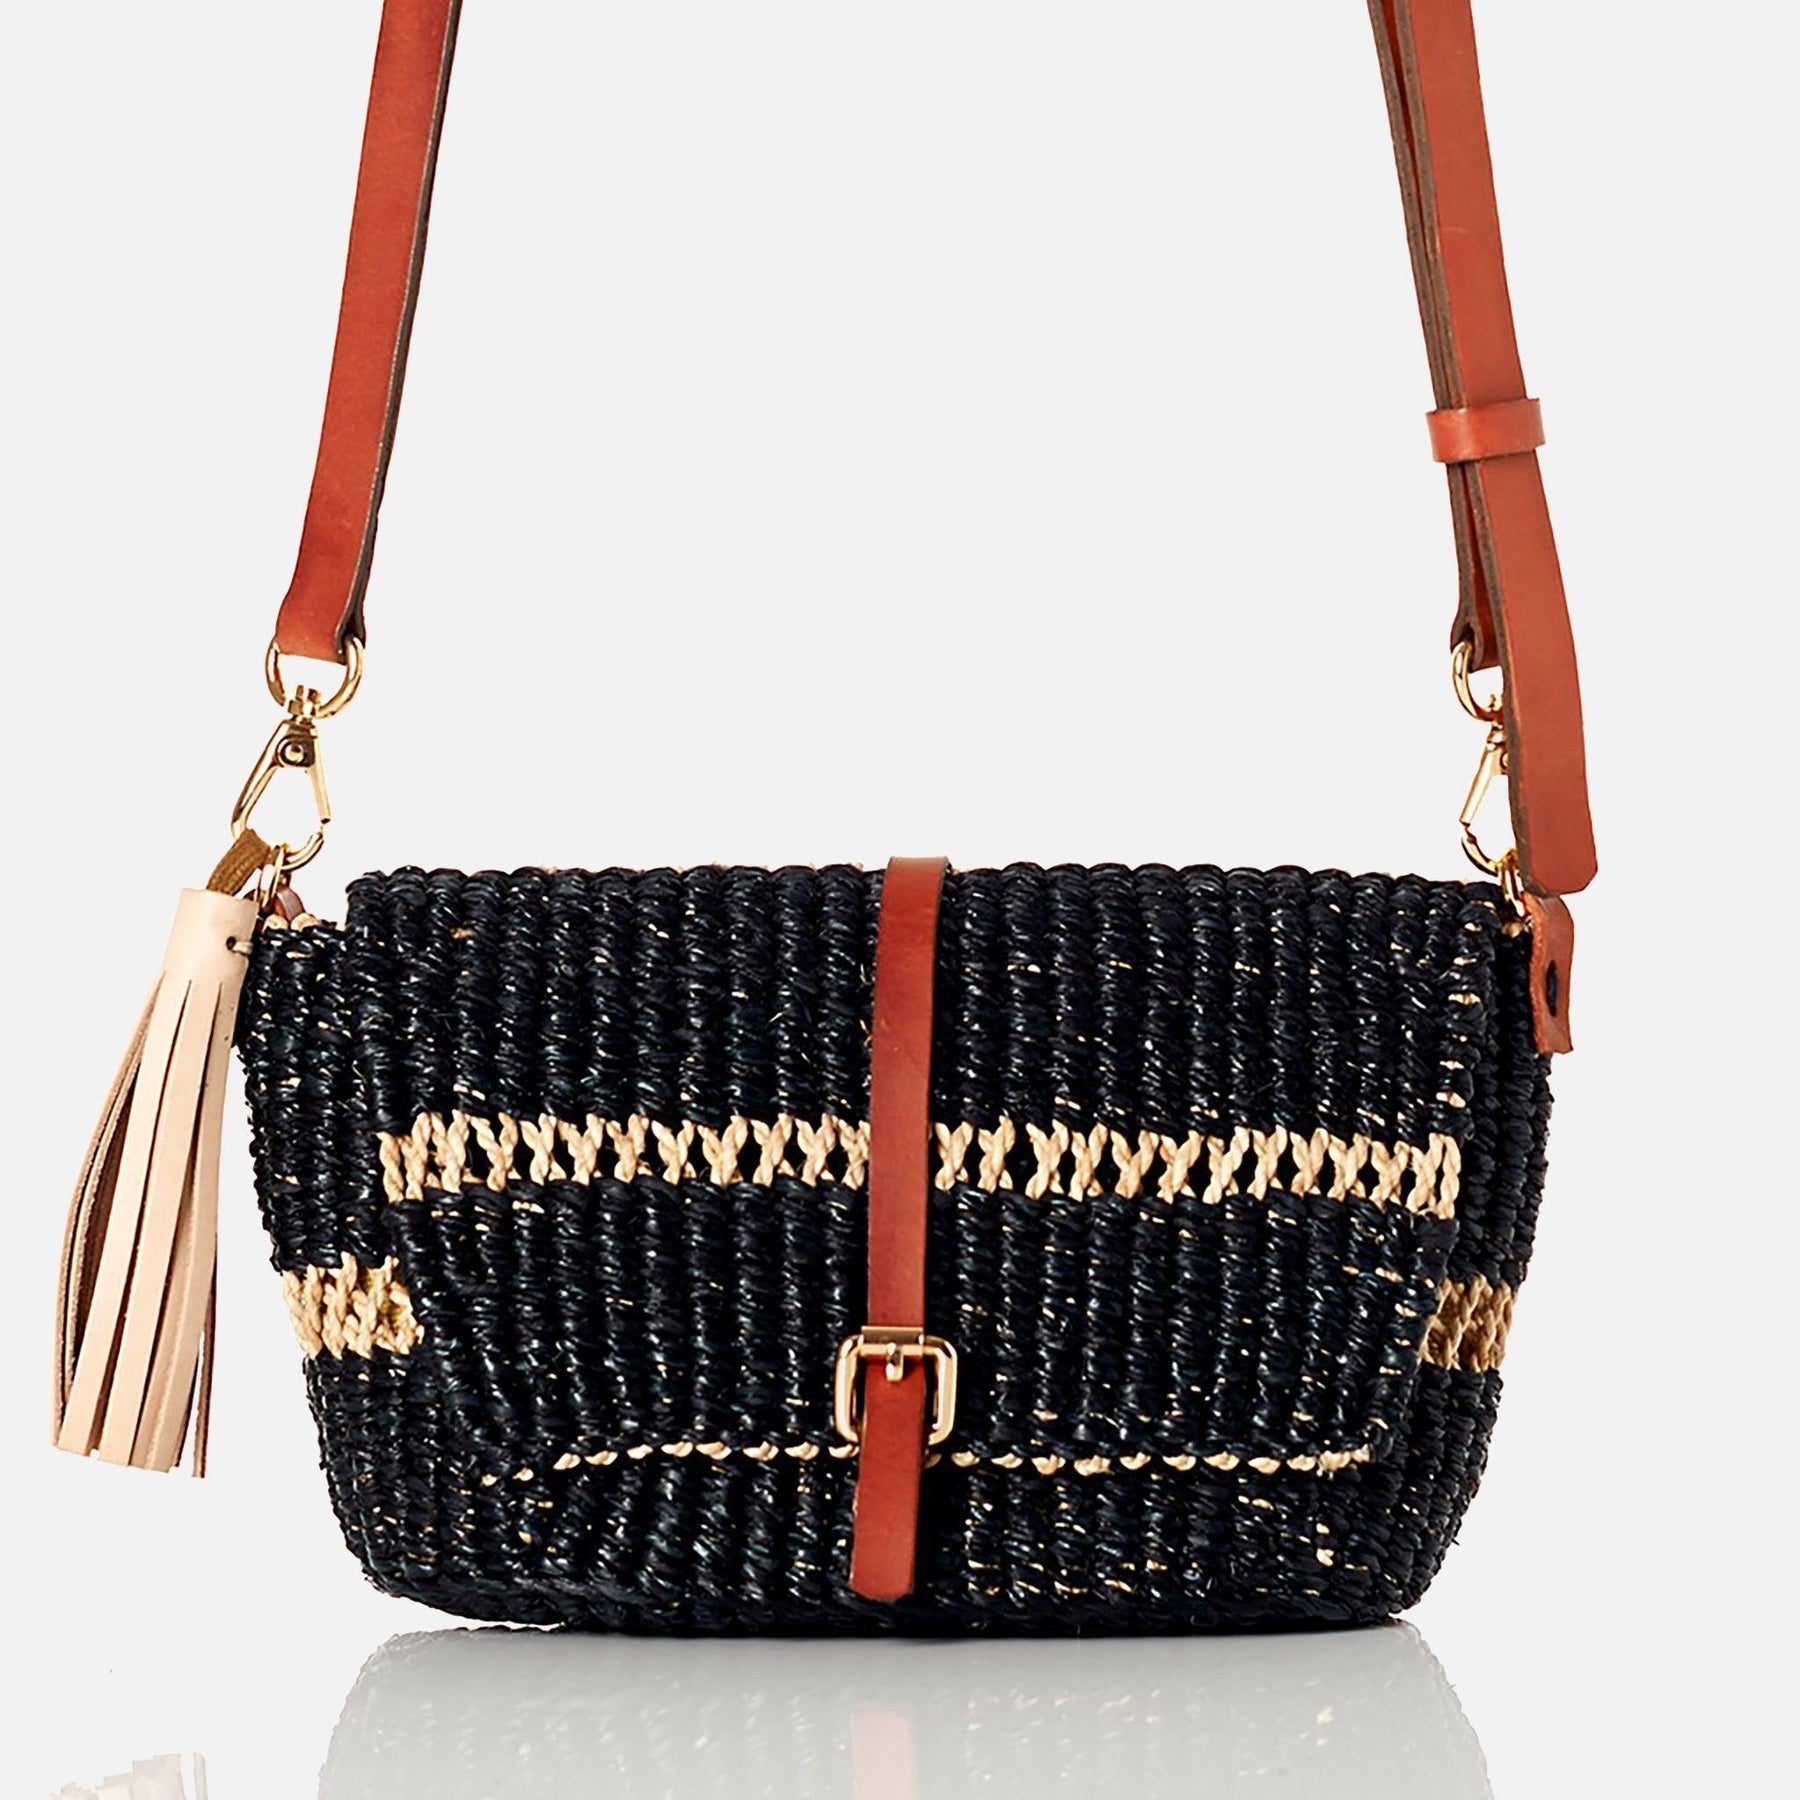 Raffia Woven Wicker Clutch Bag Straw Purse Girls Summer Beach Crossbody  Handbags | eBay